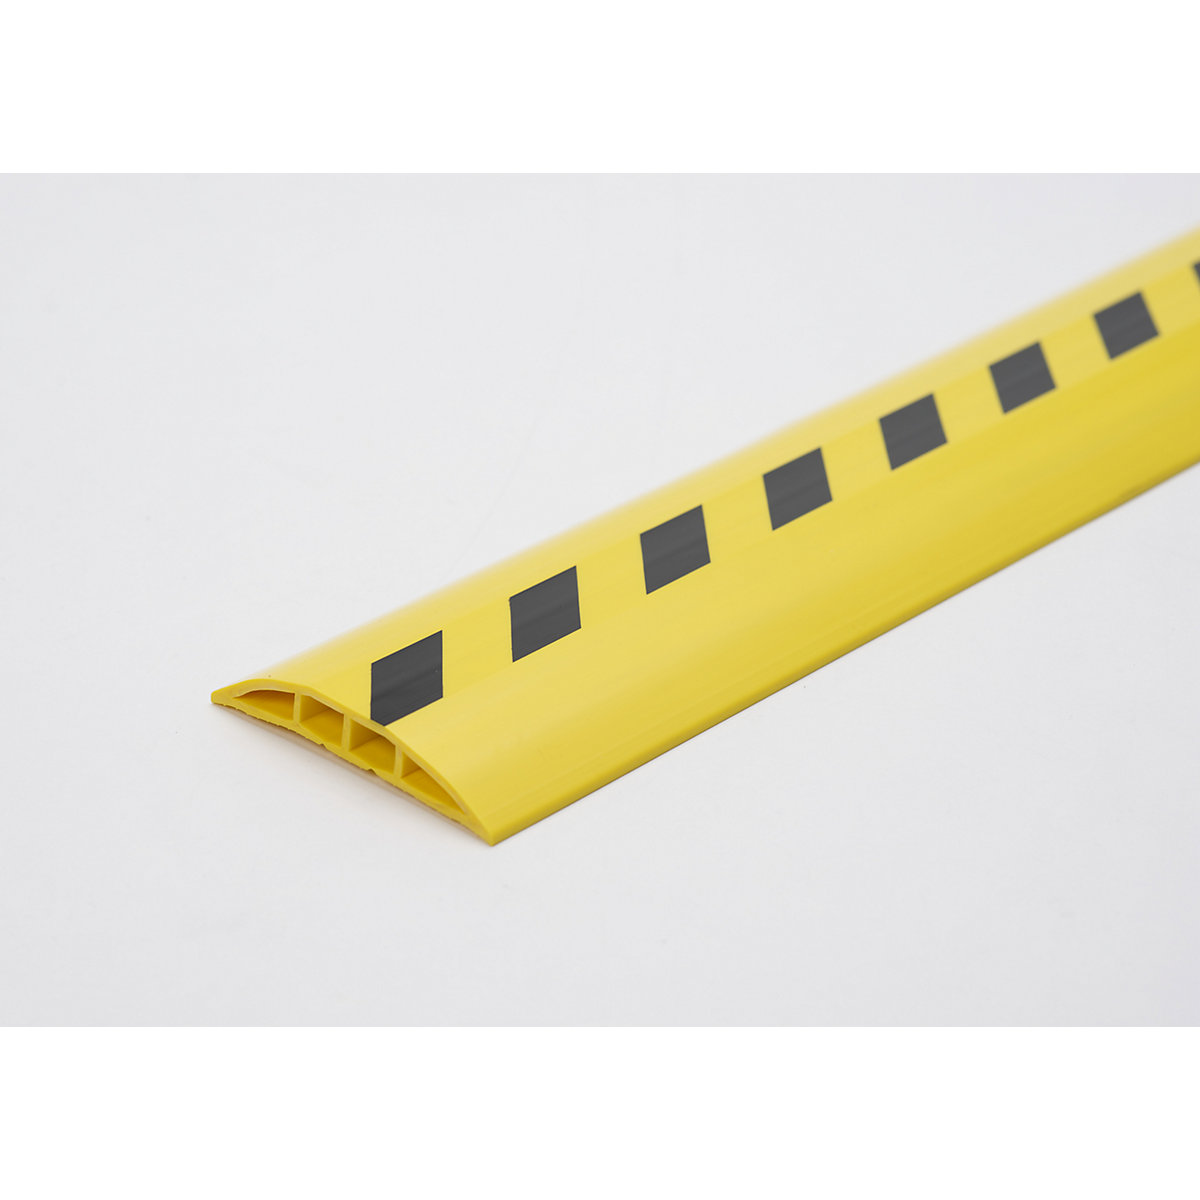 Canalina passacavo in plastica, per cavi e tubi flessibili con Ø fino a 7,5 mm, nero-giallo, 2 camere, lunghezza 1,5 m-5